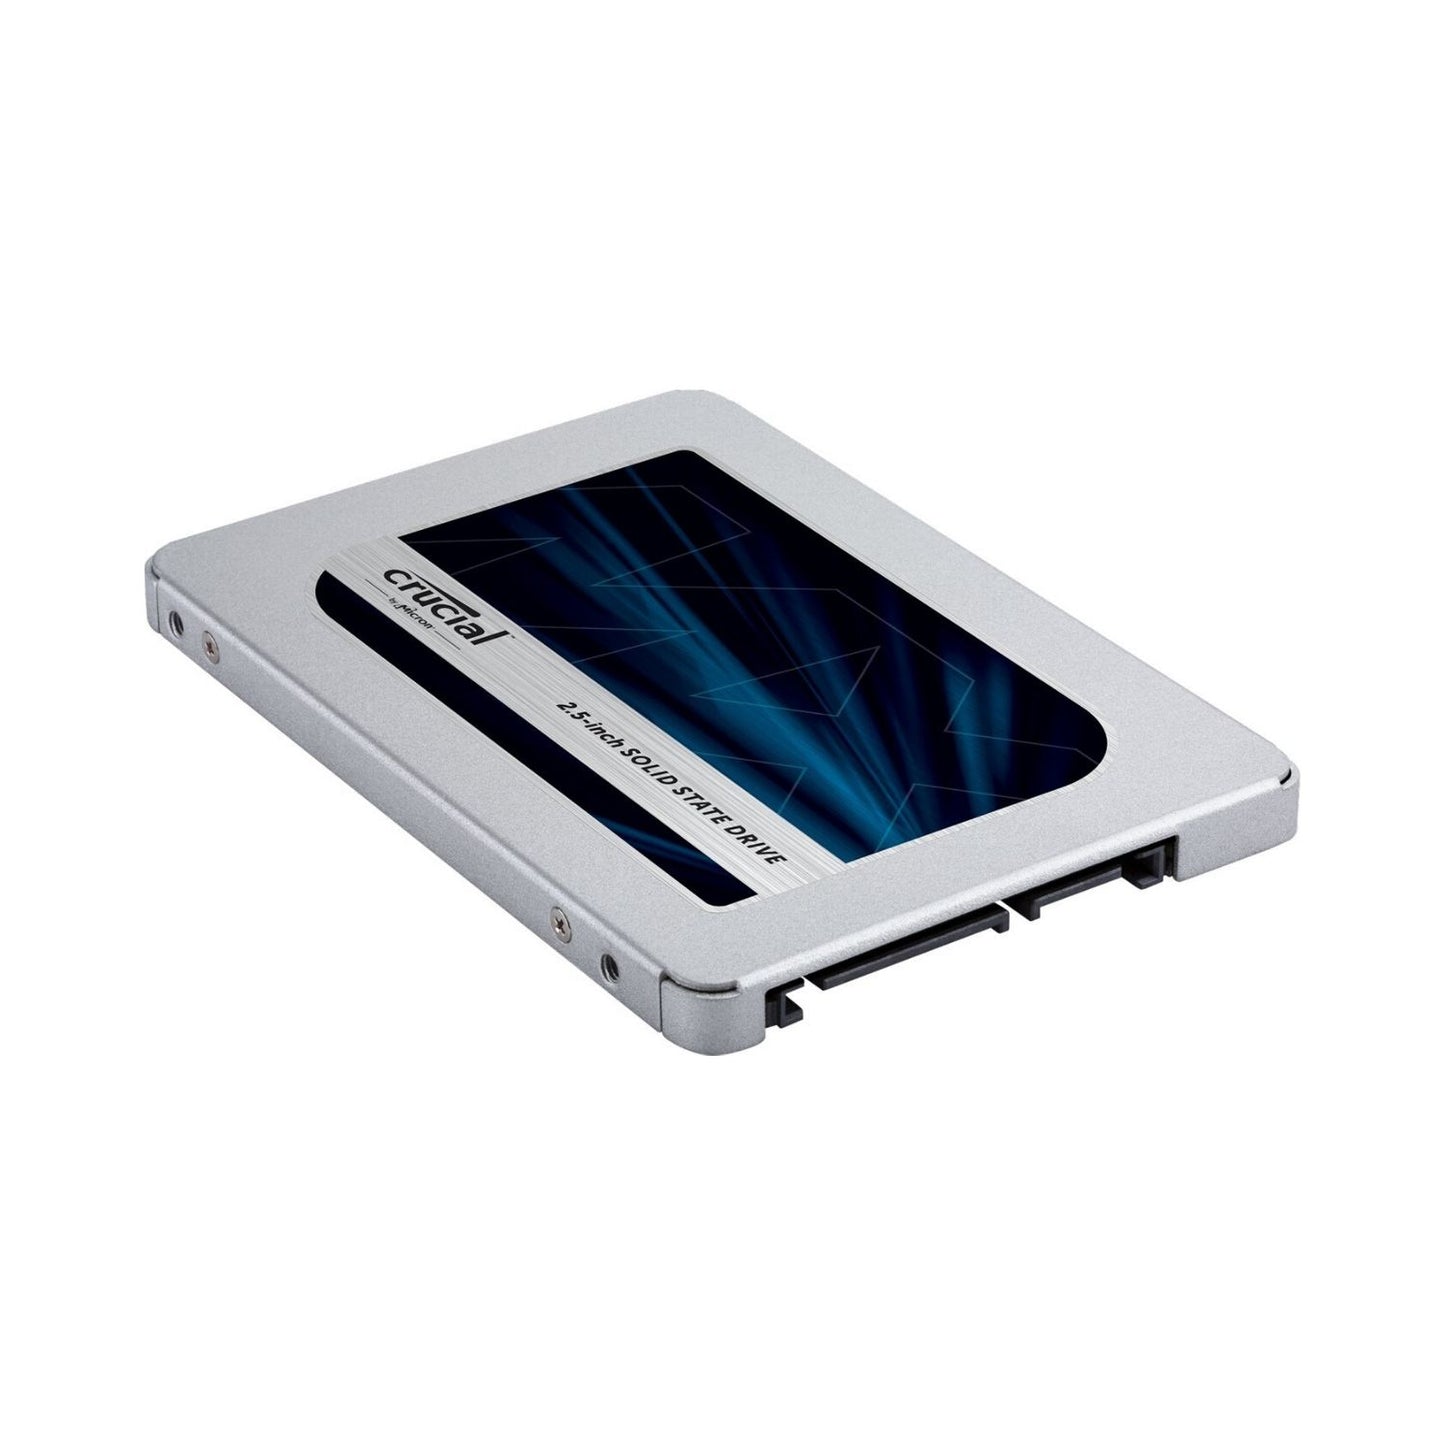 Crucial MX500 2TB SATA 2.5 इंच इंटरनल SSD सॉलिड स्टेट ड्राइव